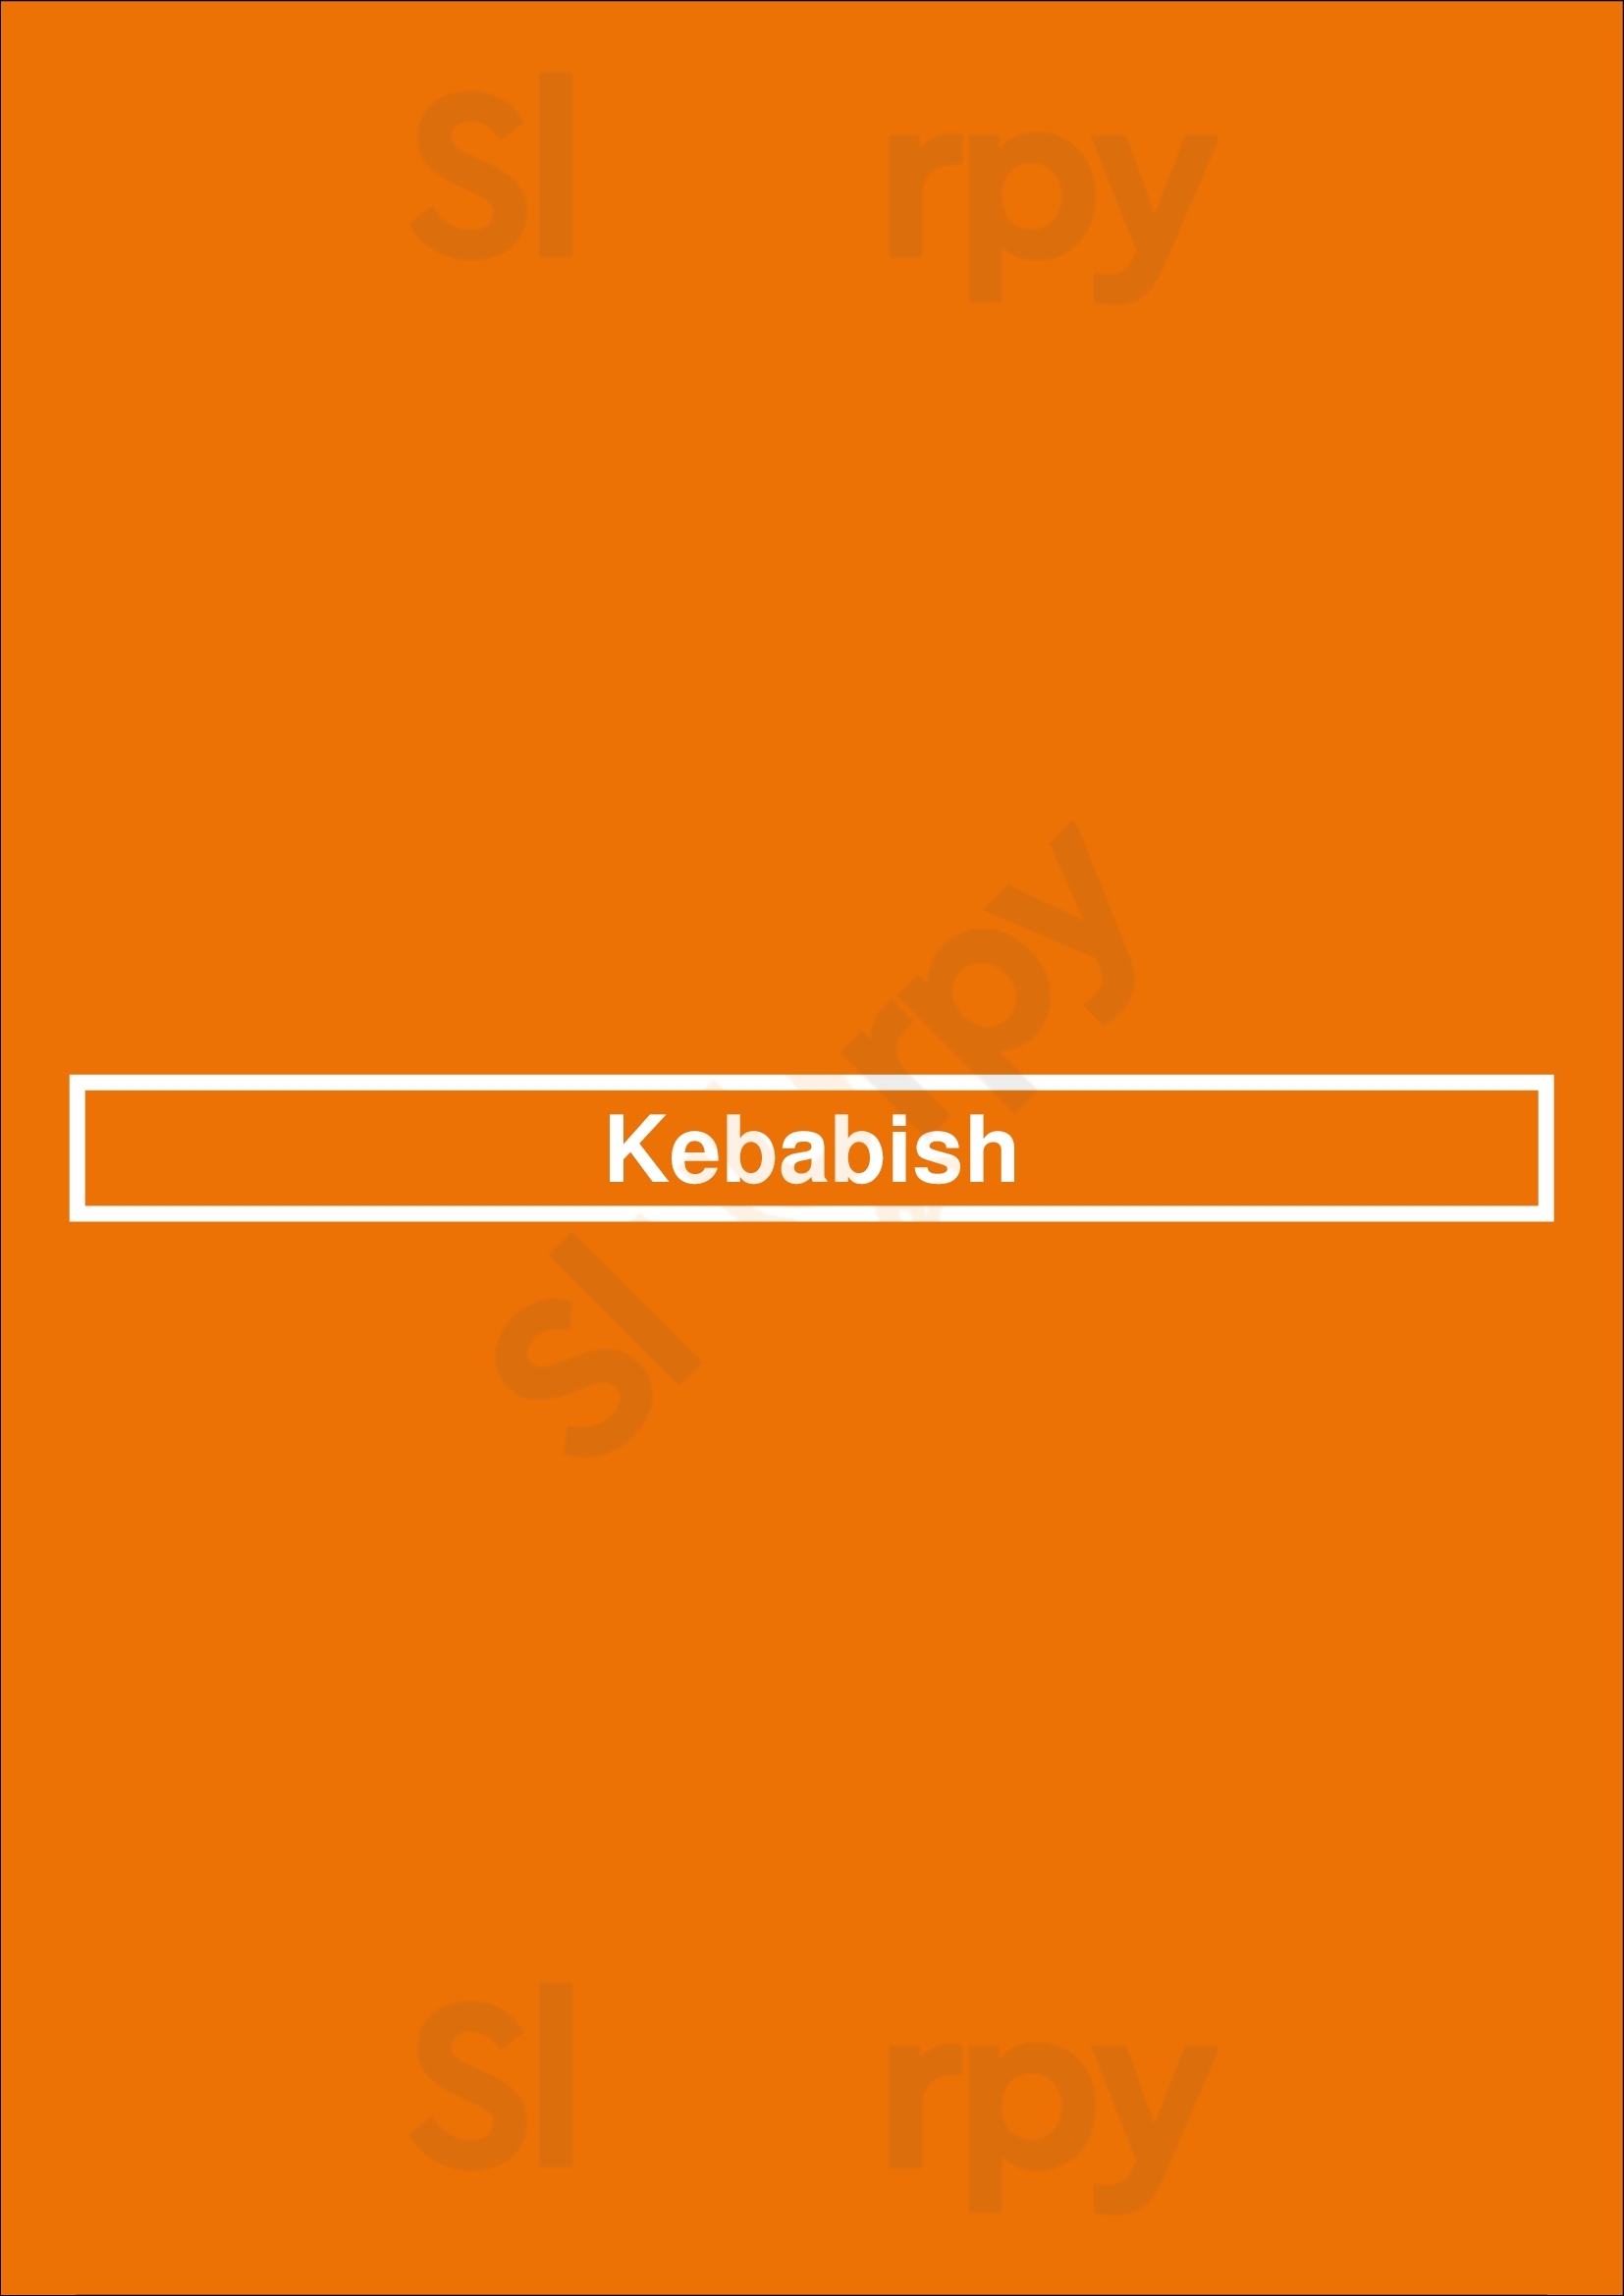 Kebabish London Menu - 1